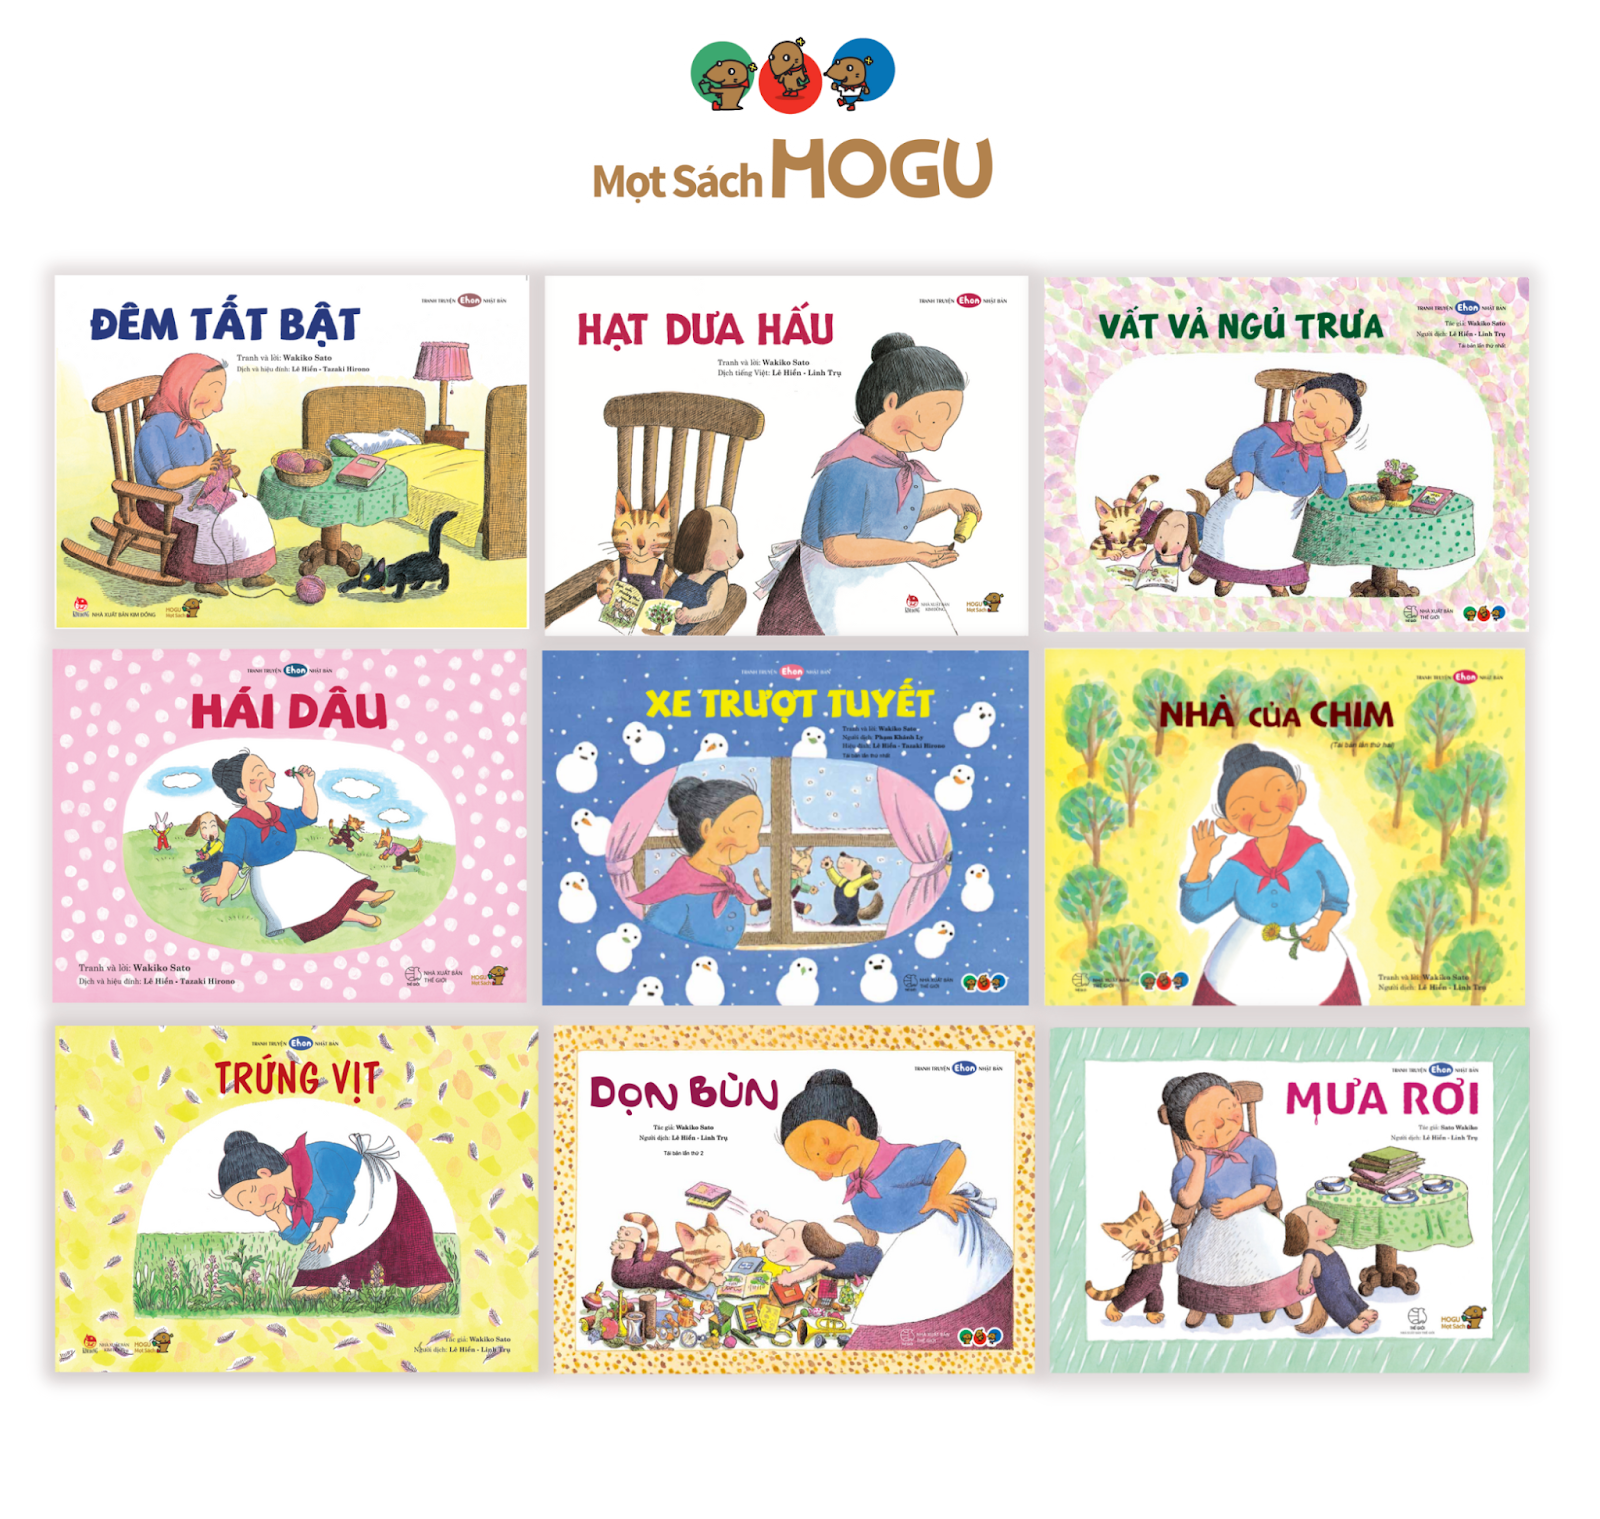 Truyện cho bé 4 tuổi nhí nhảnh: Bộ sách Bà Ba Ba